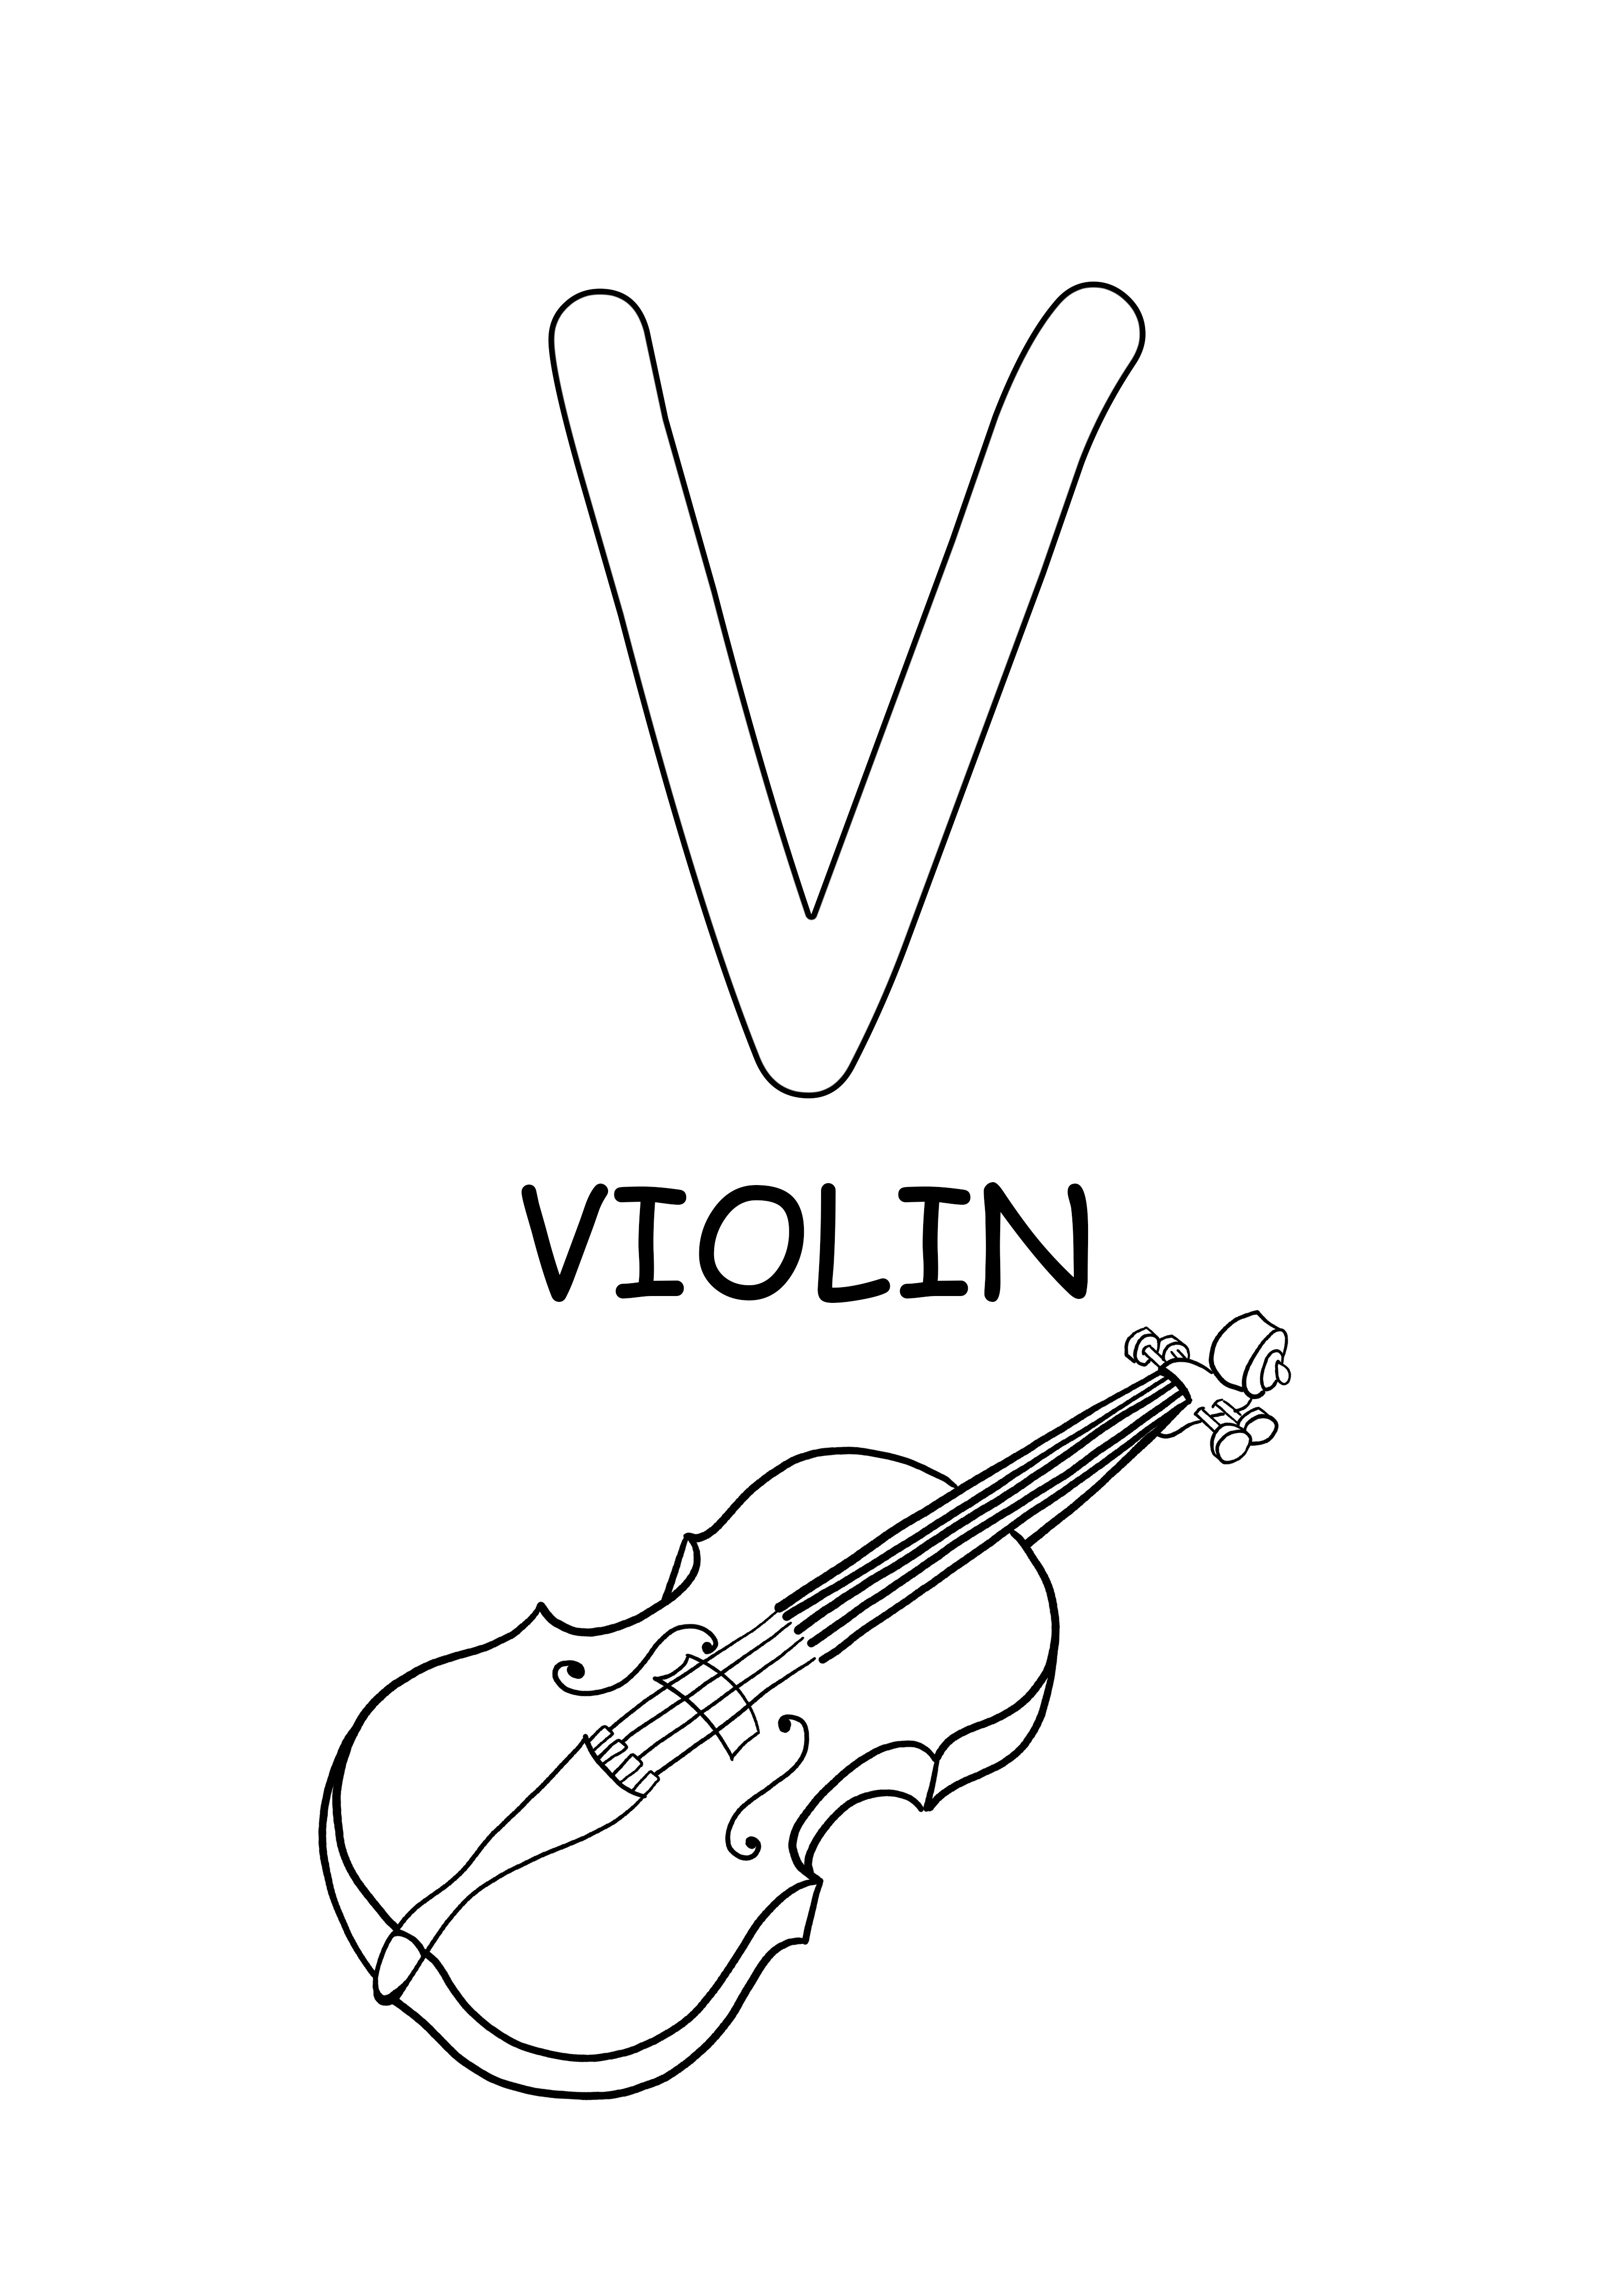 palabra en mayusculas-violin palabra imprimible gratis para colorear